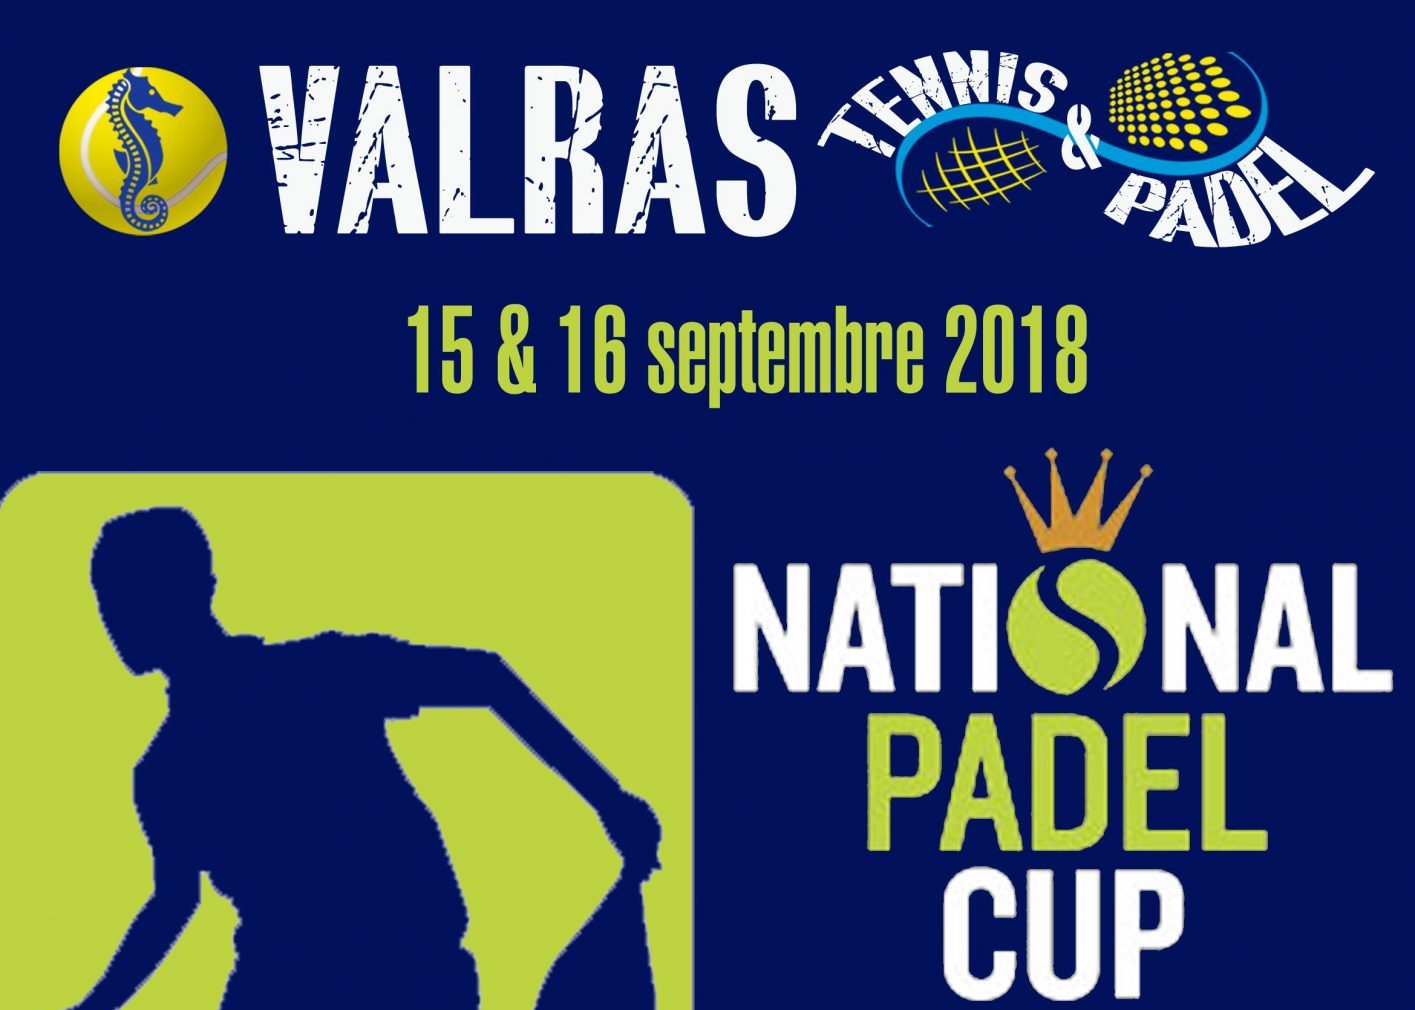 ナショナルステージ Padel テニスカップ Padel ヴァルラ